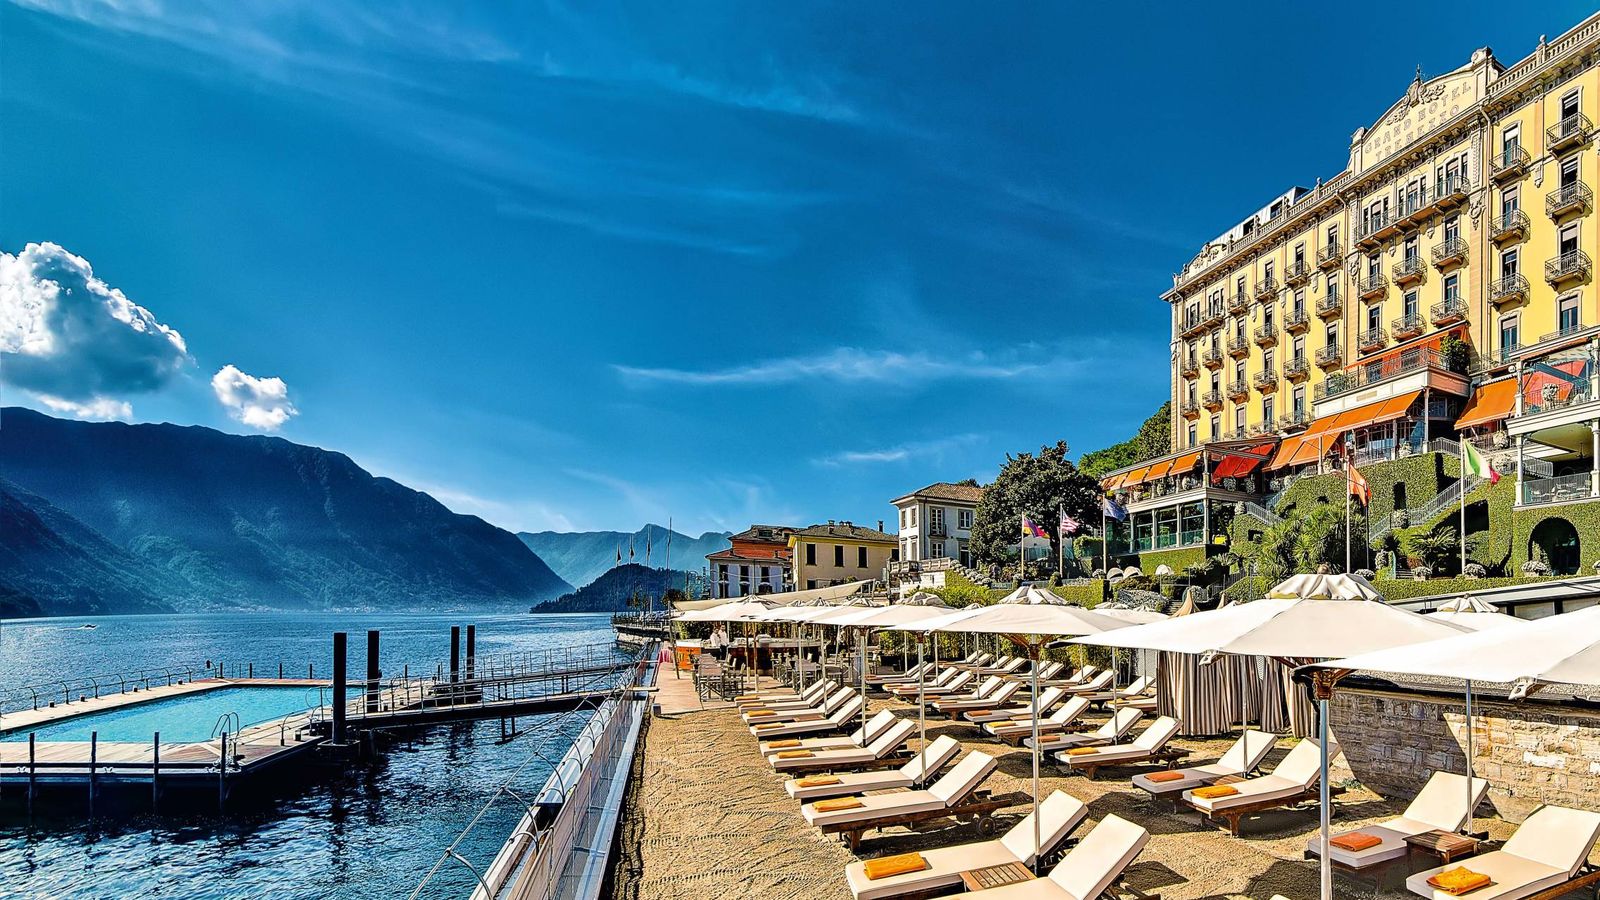 Foto: Un hotel con piscina y acceso al lago. Así es la terraza exterior del Grand Hotel Tremezzo. (Cortesía)